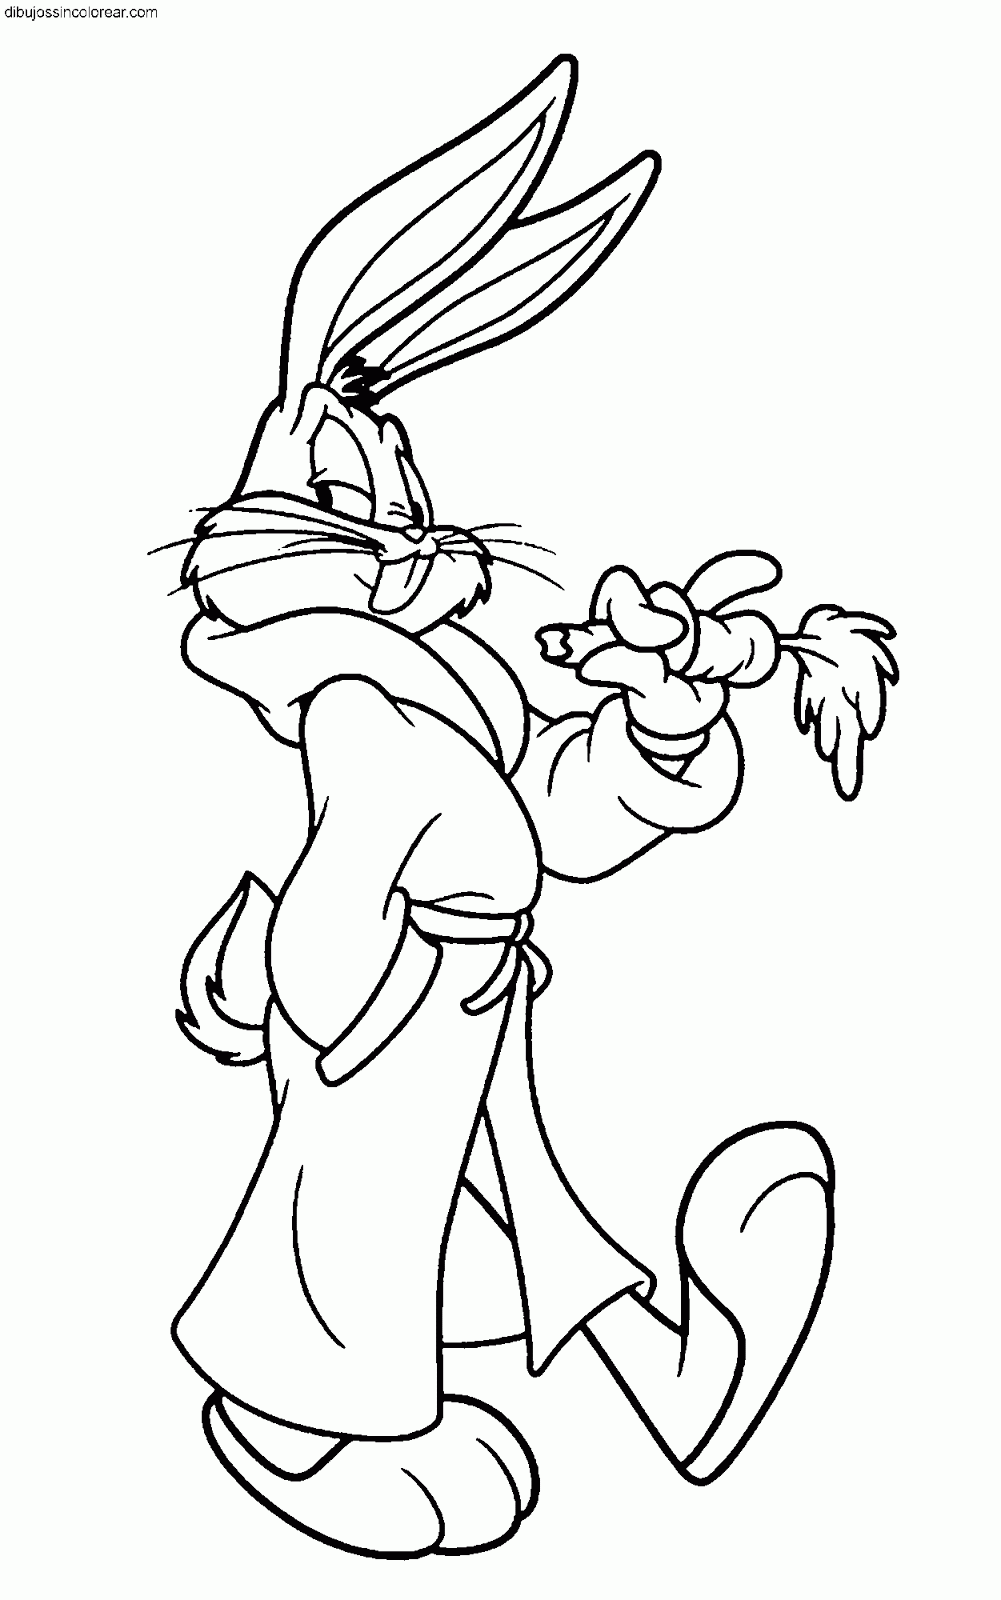 Dibujos Sin Colorear: Dibujos de Bugs Bunny para Colorear